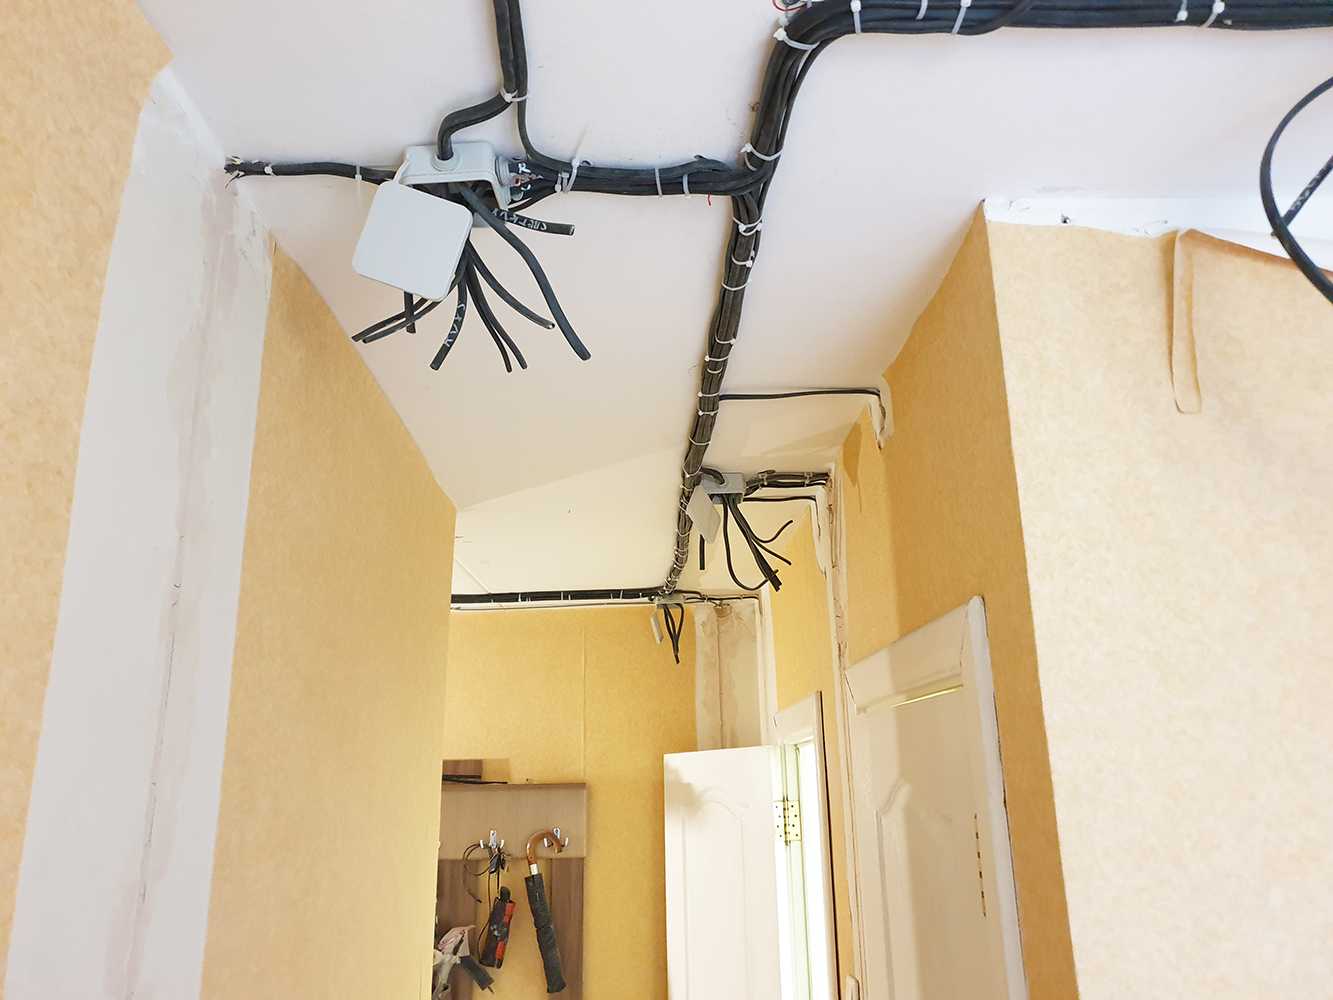 Проводка без штробления стен. замена электропроводки в квартире